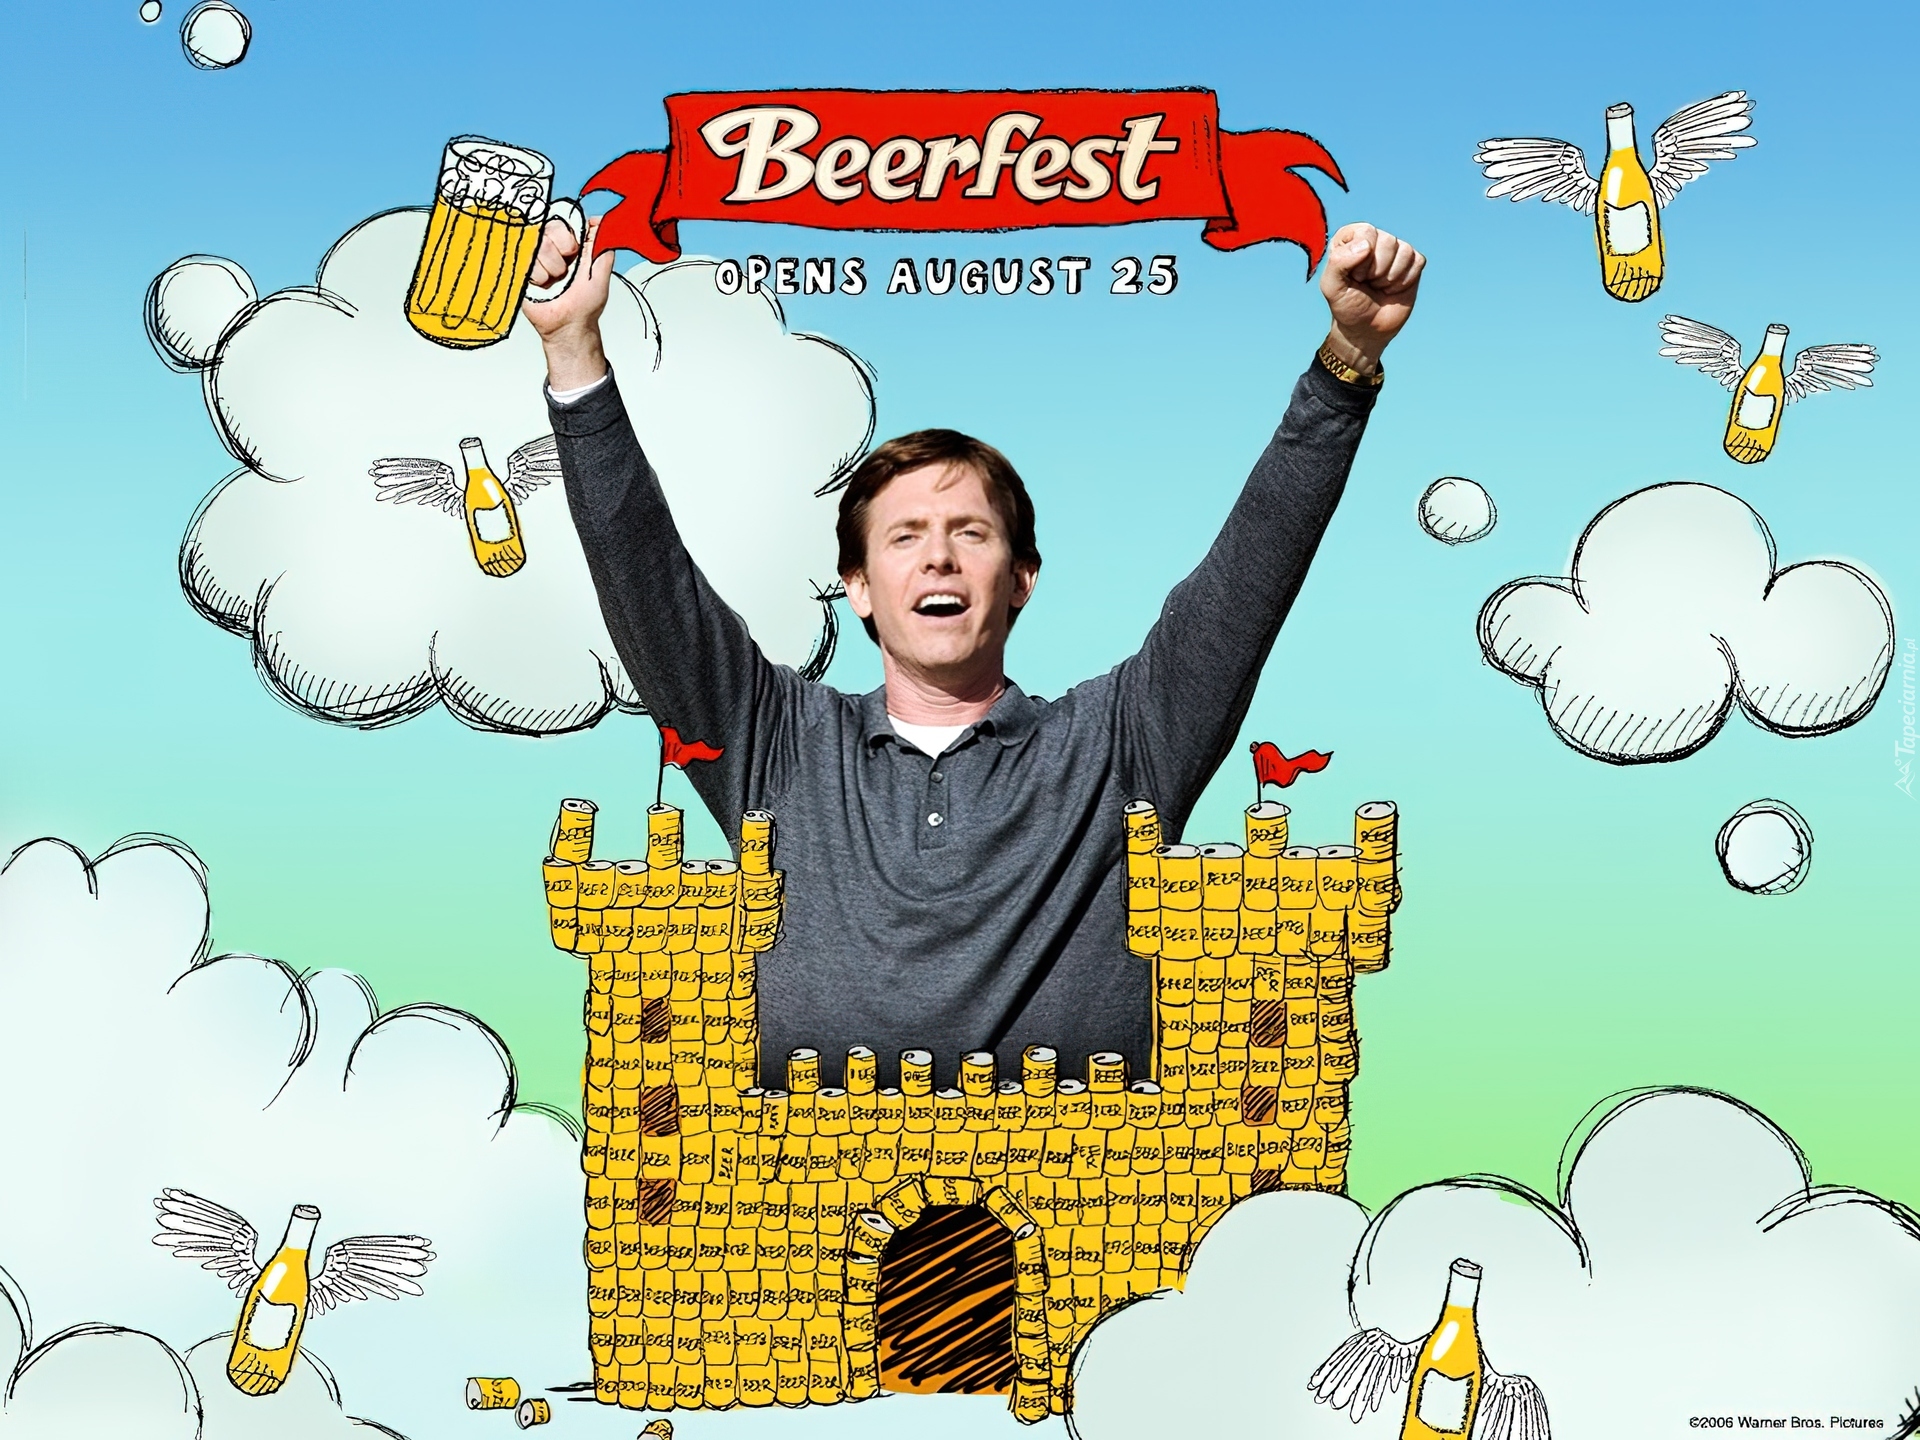 Beerfest, chmurki, piwo, mężczyzna